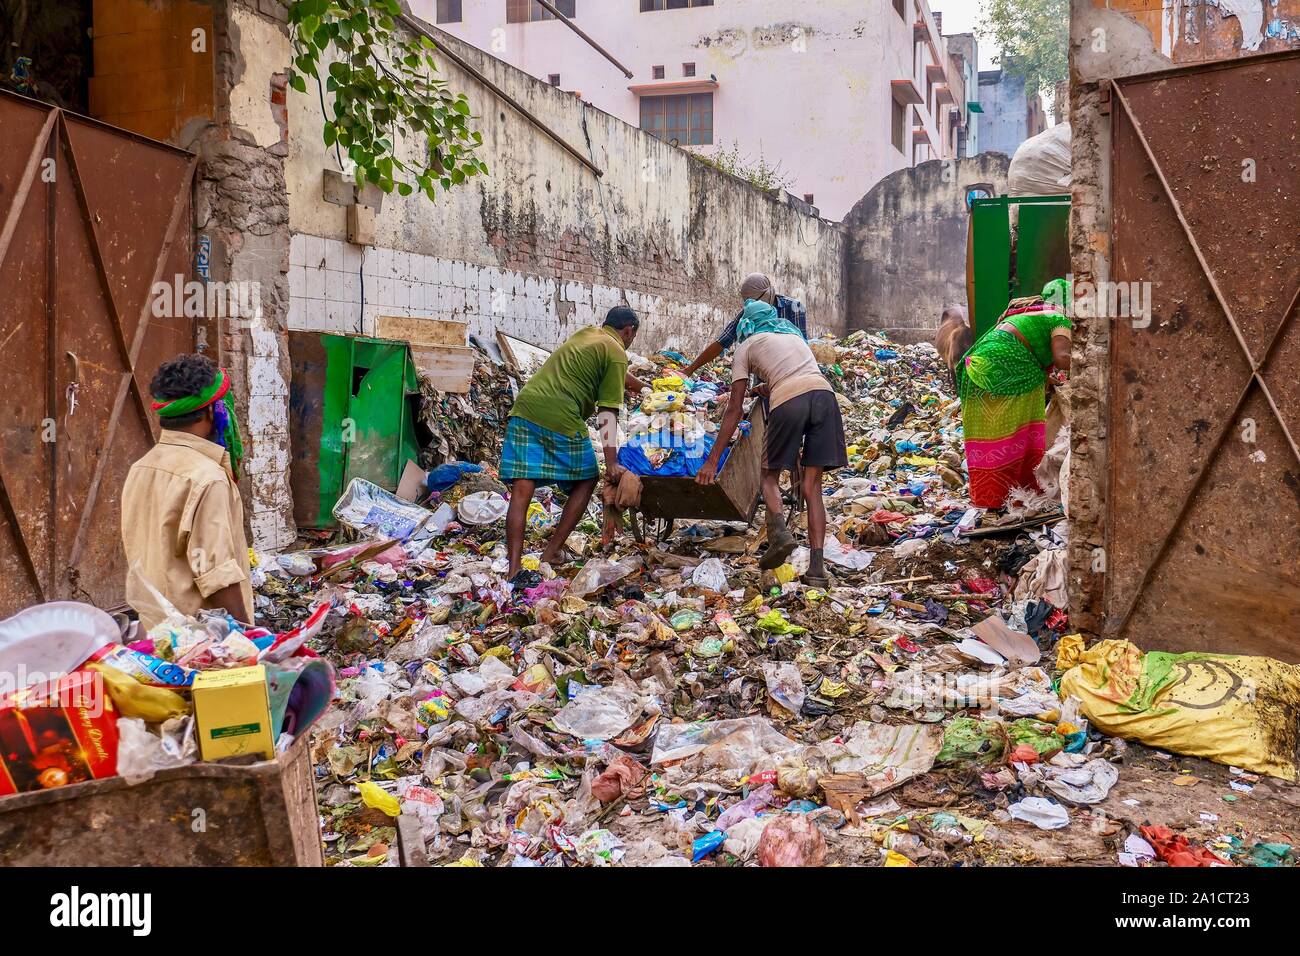 Garbage è oggetto di dumping e memorizzati in un posto vacante in centro città molto in Varanasi, India, che solleva il problema della gestione dei rifiuti e la sanità pubblica. Foto Stock